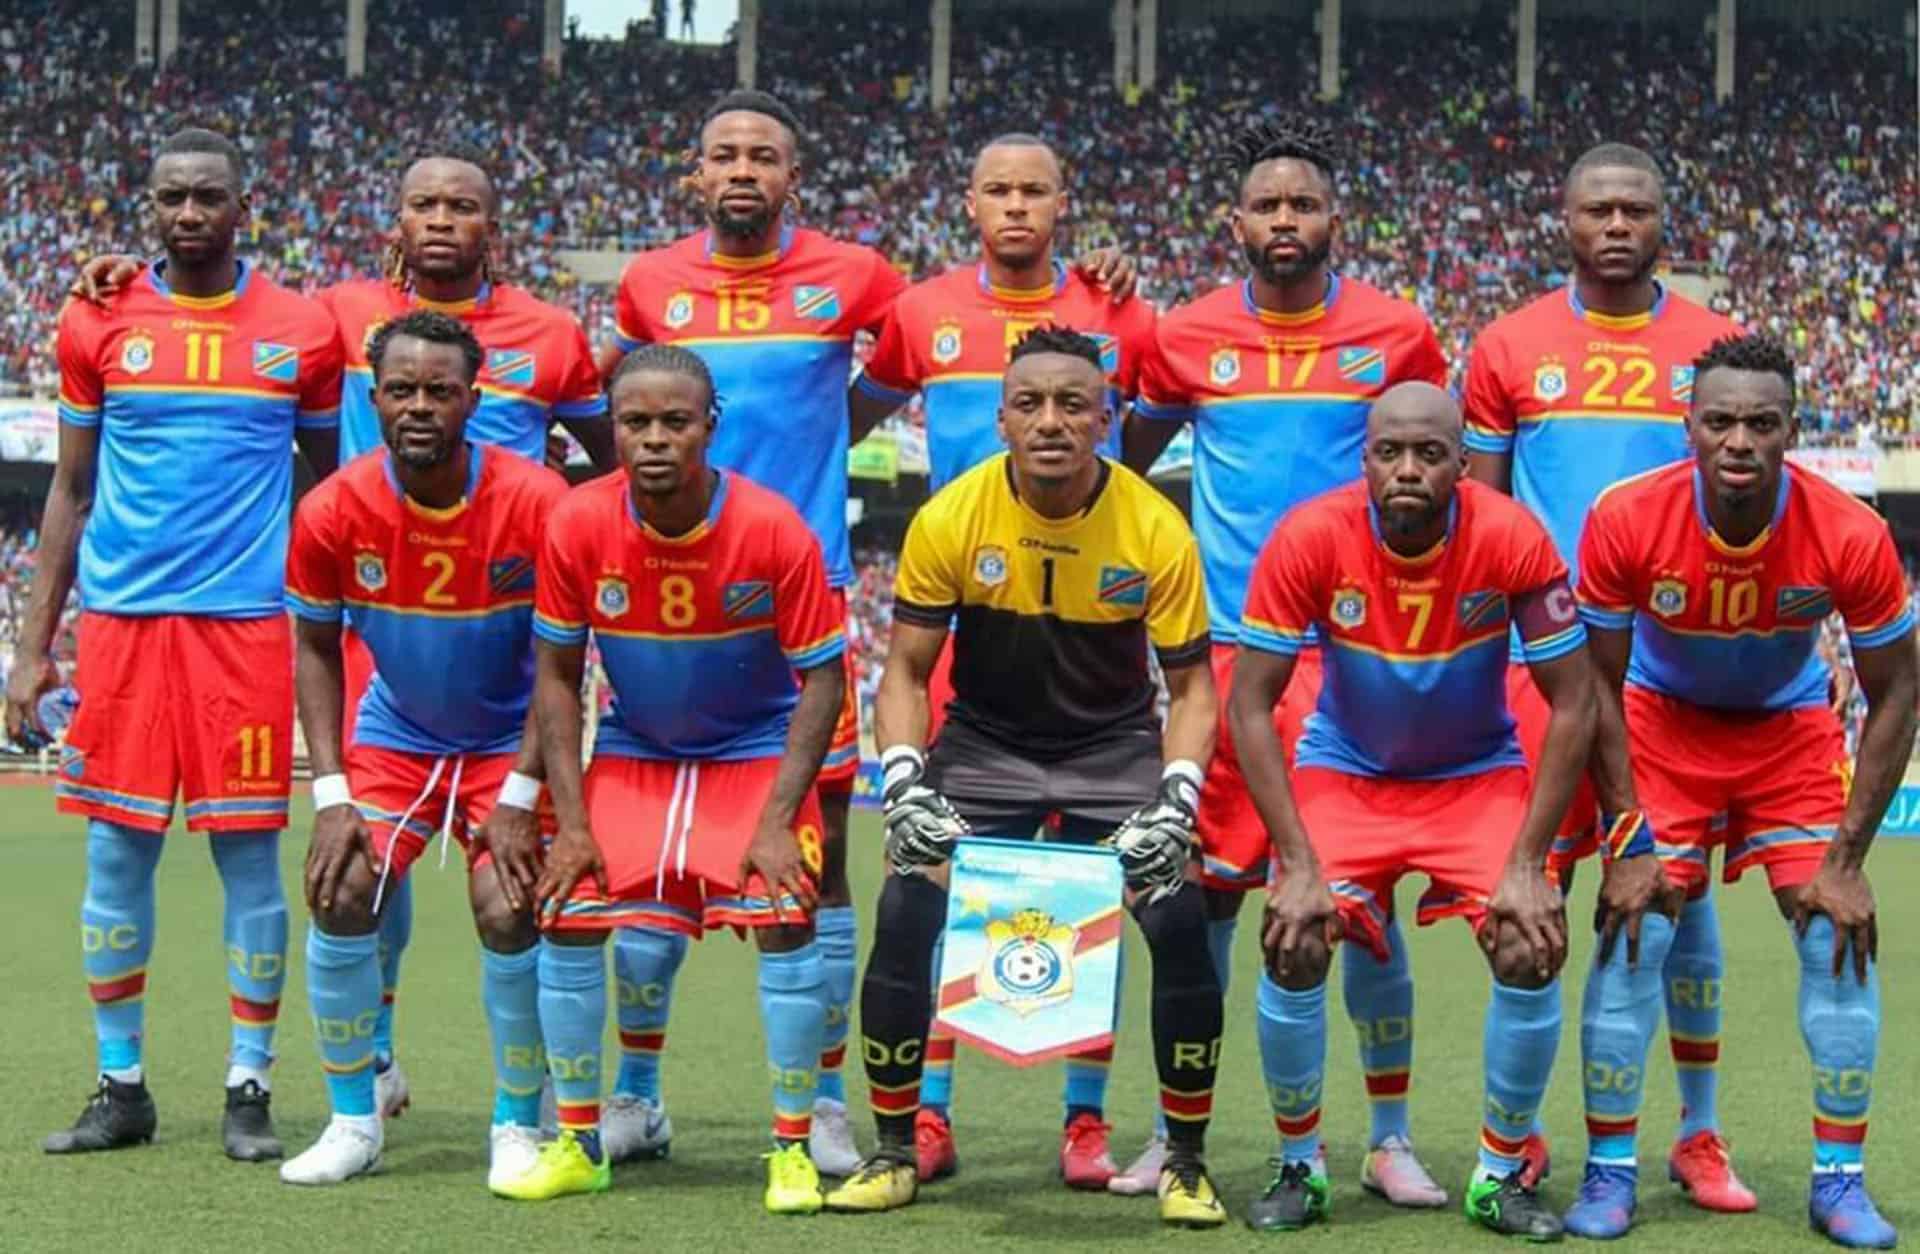 Premier classement FIFA de l'année 2020 la RDC garde sa position dans